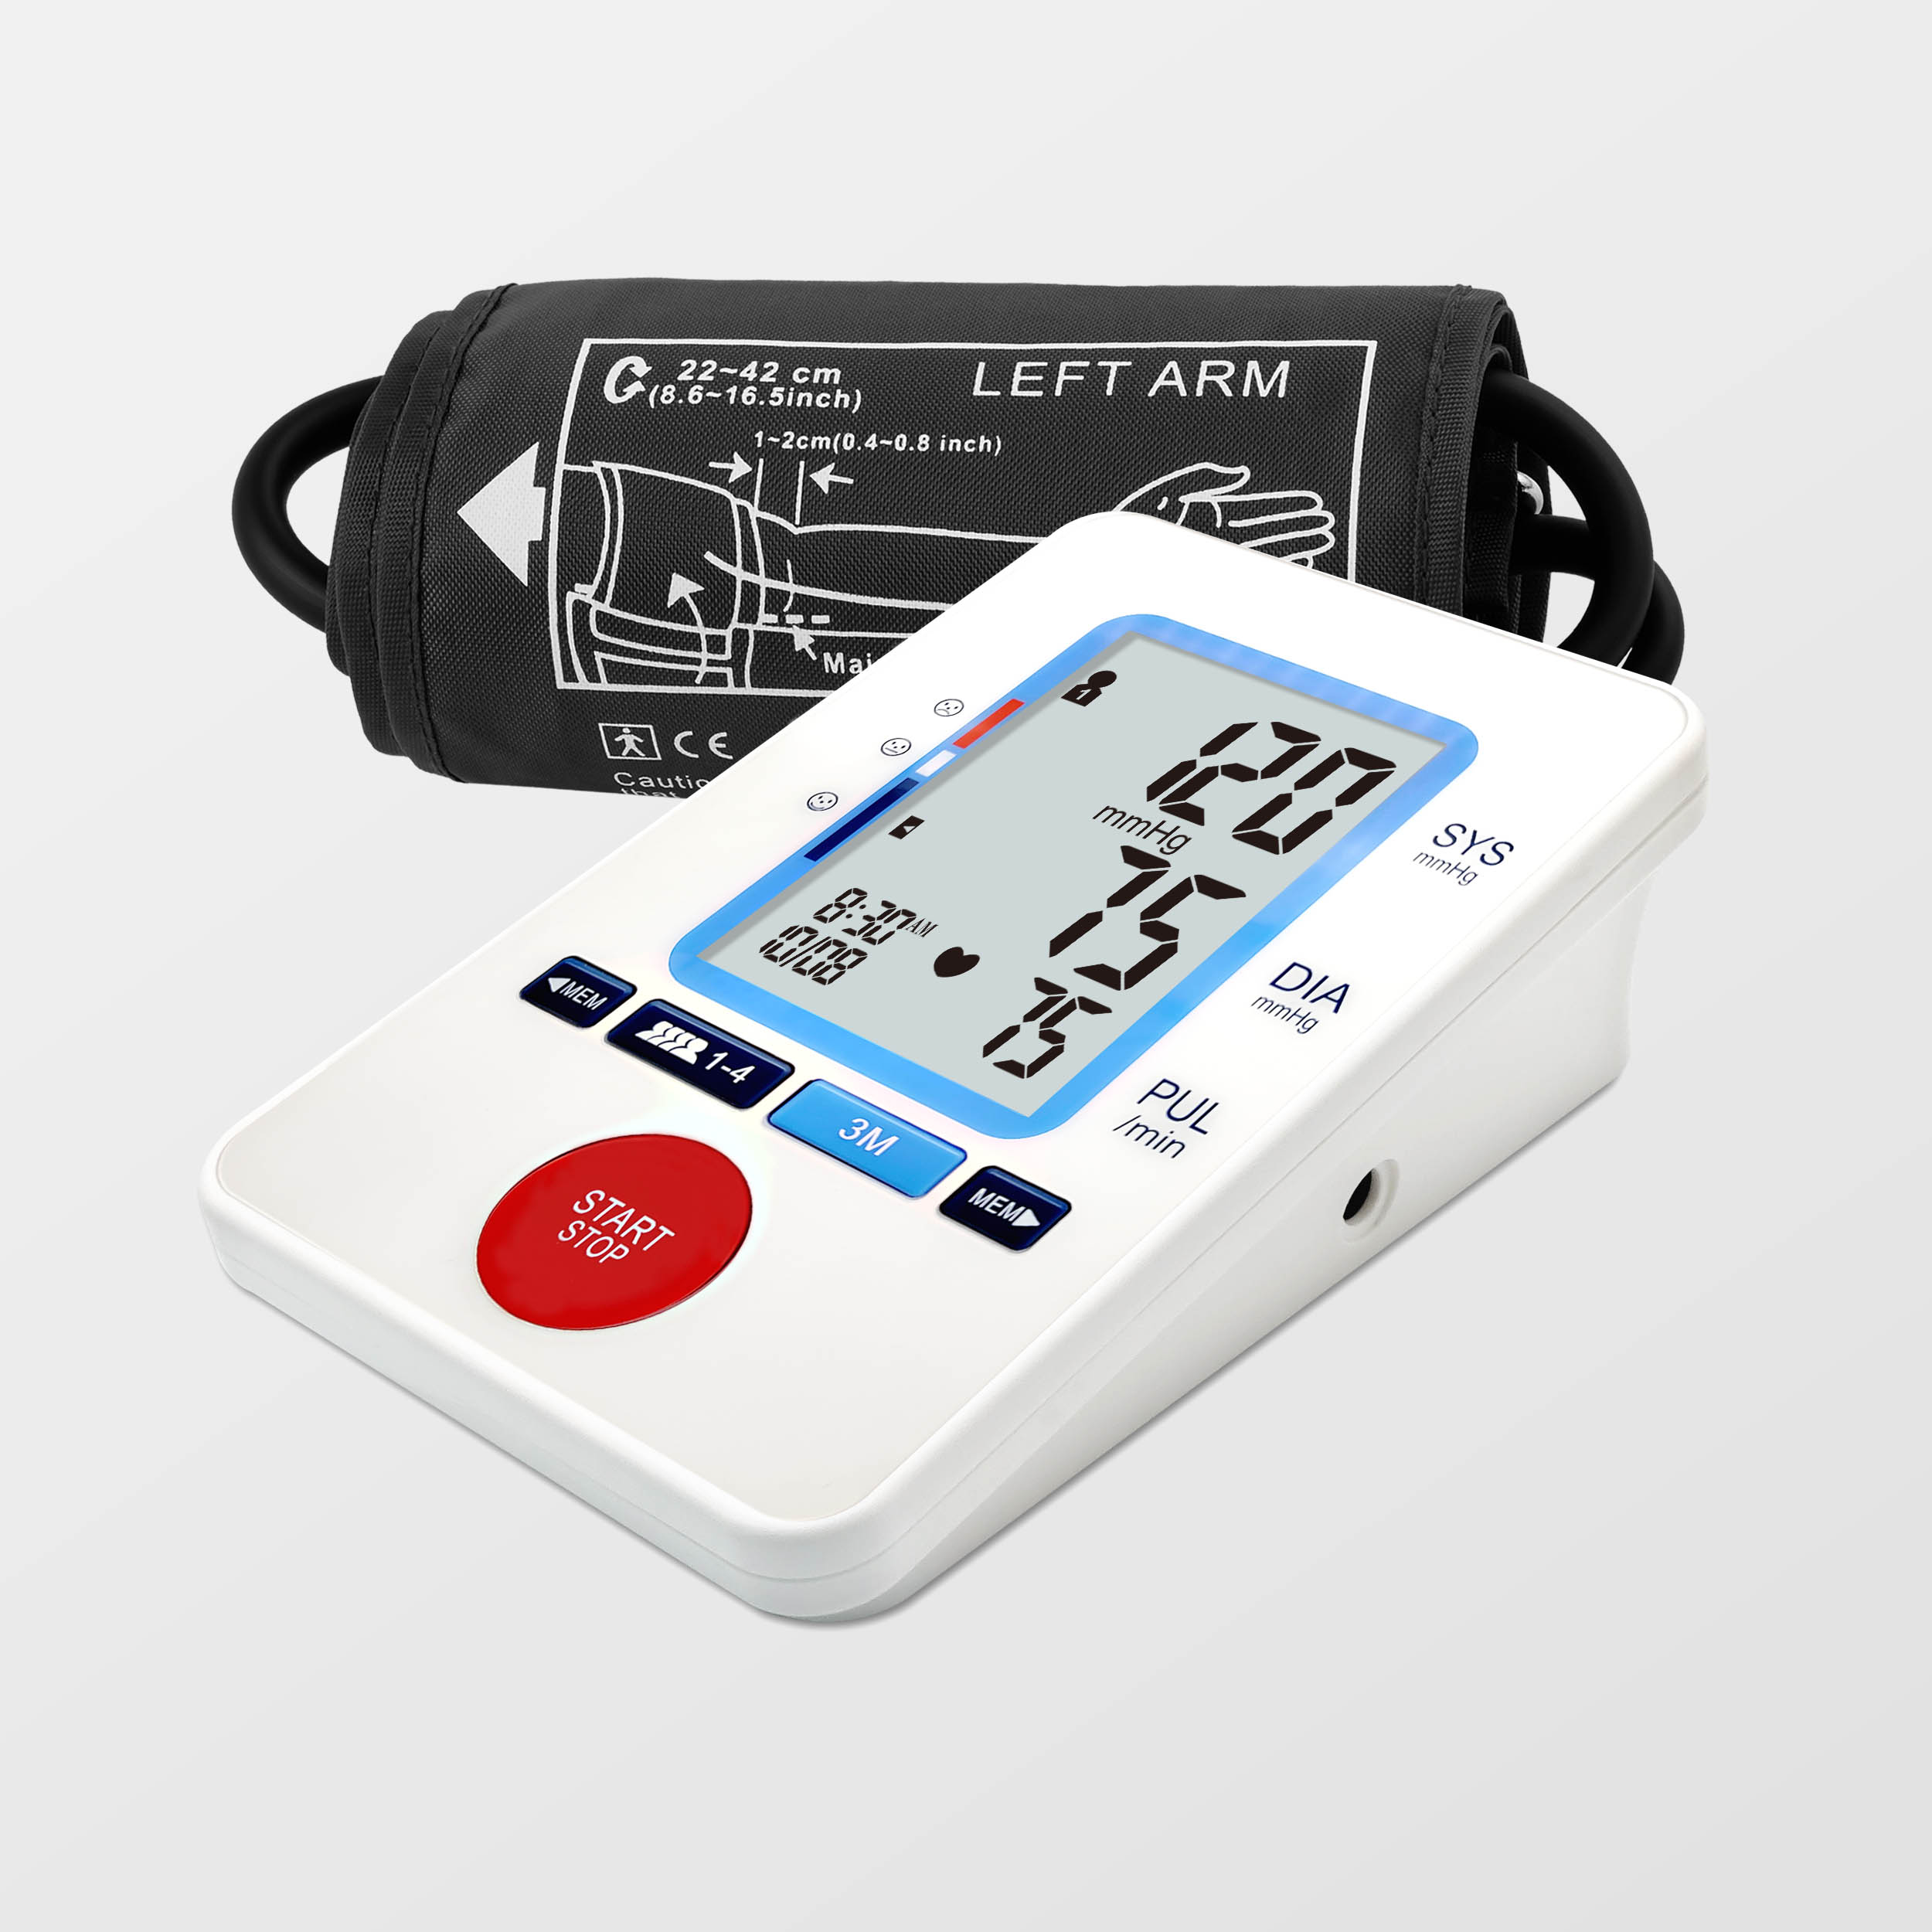 ROHS REACH 承認された上腕血圧モニター デジタル Tensiometro Bluetooth